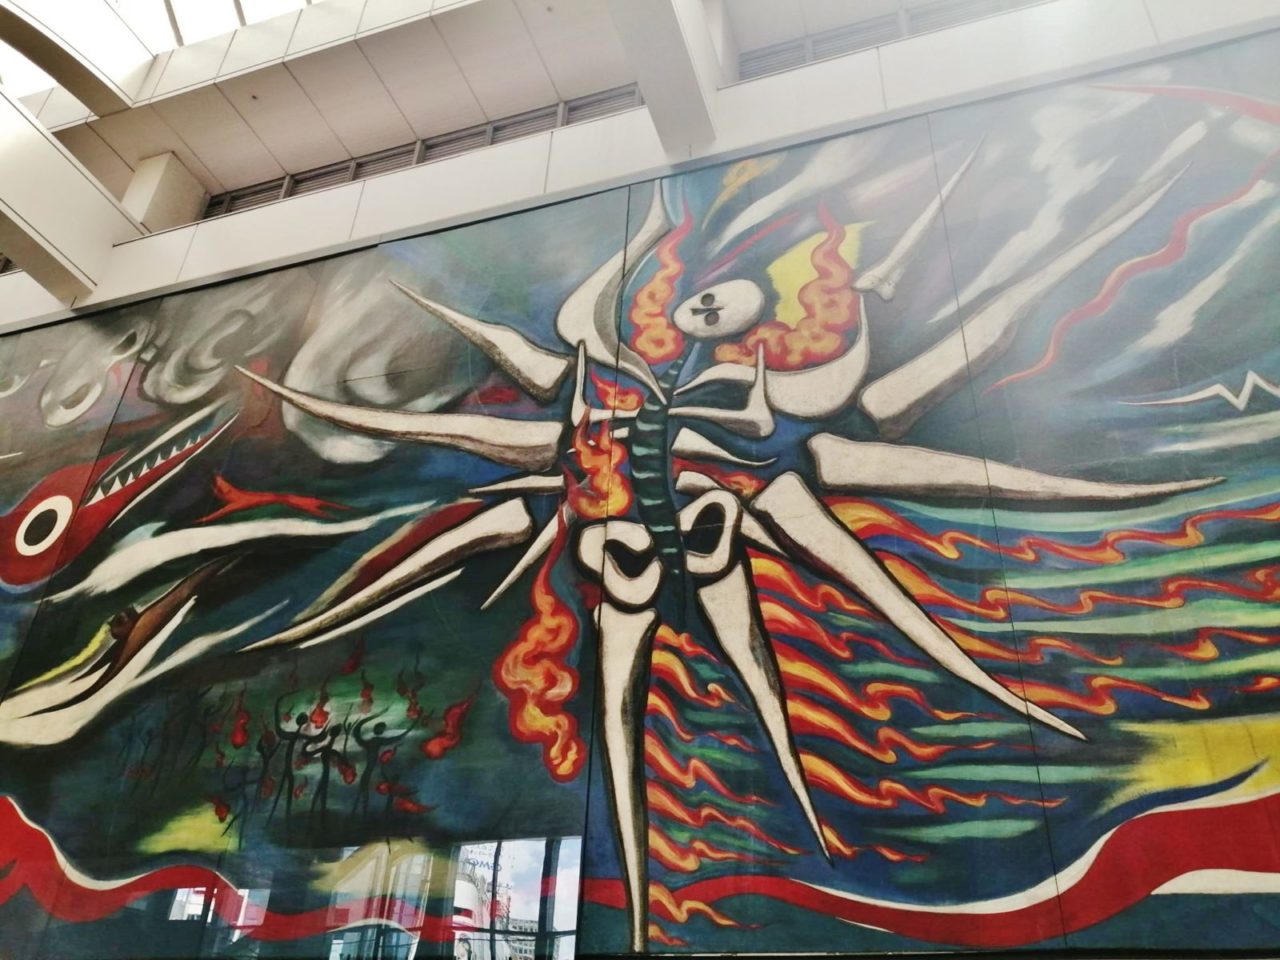 渋谷駅で見上げるべき岡本太郎の「明日の神話」の30メートルの壁画の画像